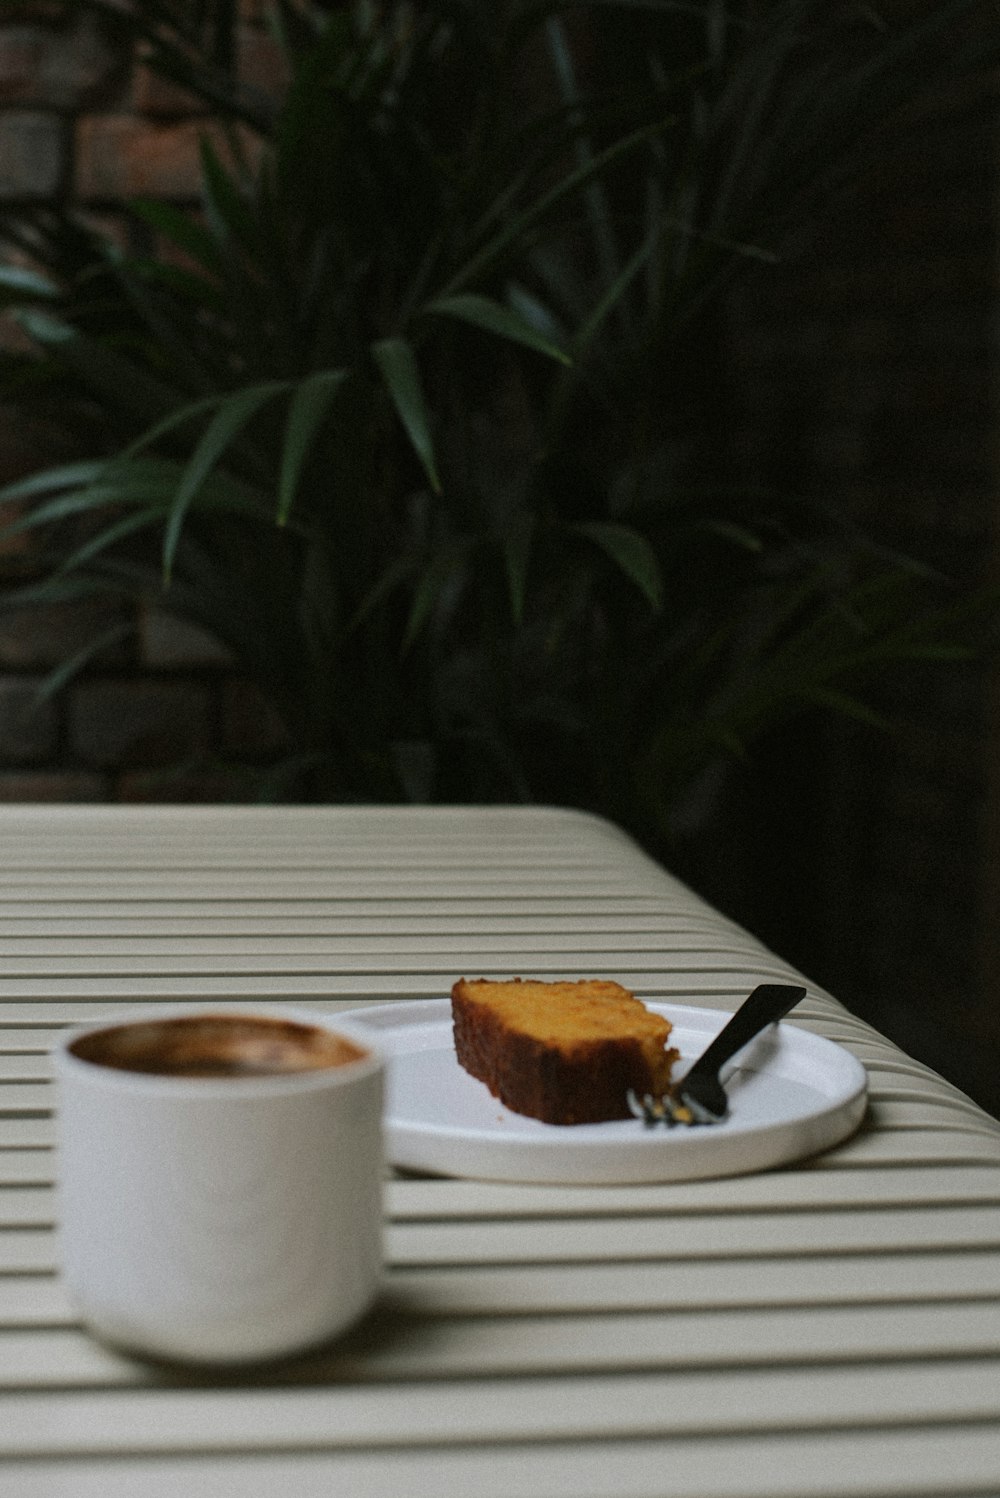 Un pedazo de pastel en un plato junto a una taza de café